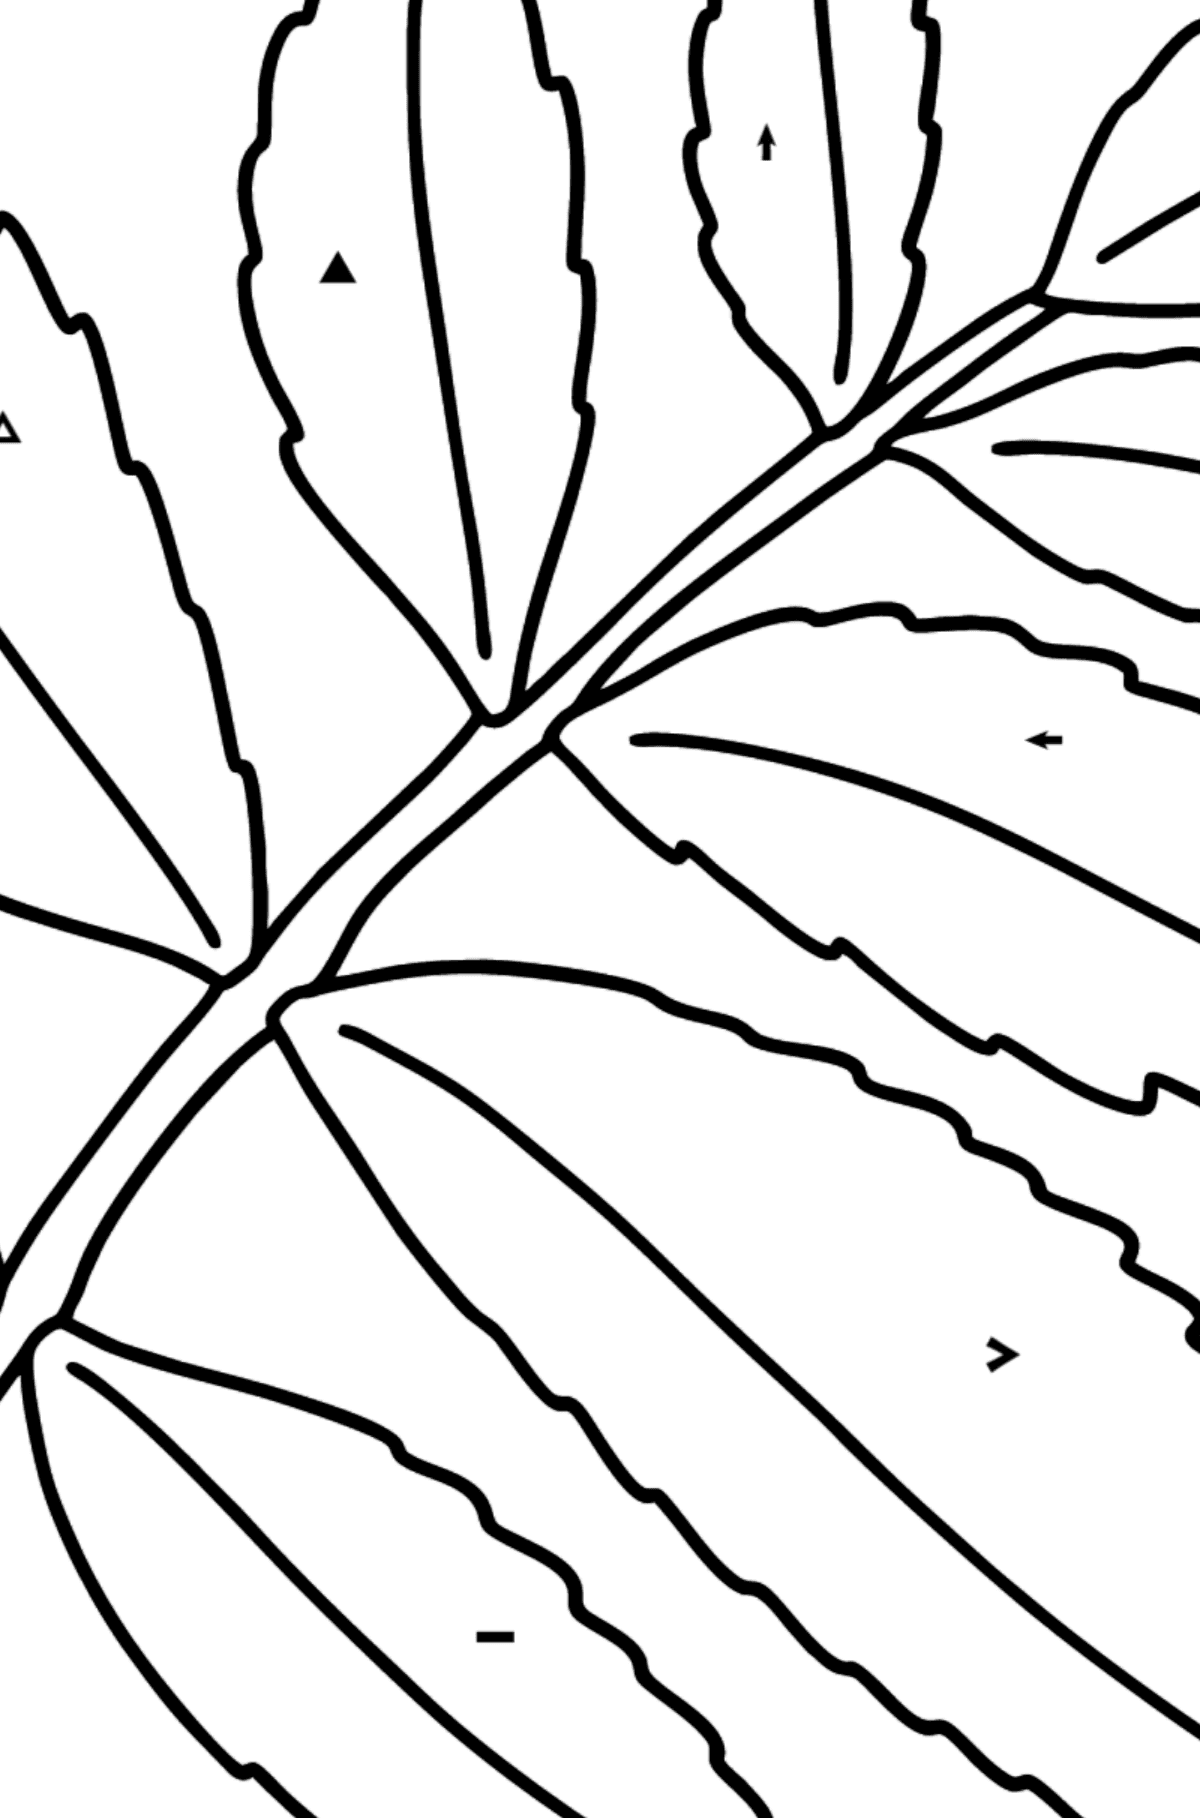 Coloriage - Feuille d'arbre de sumac - Coloriage par Symboles pour les Enfants